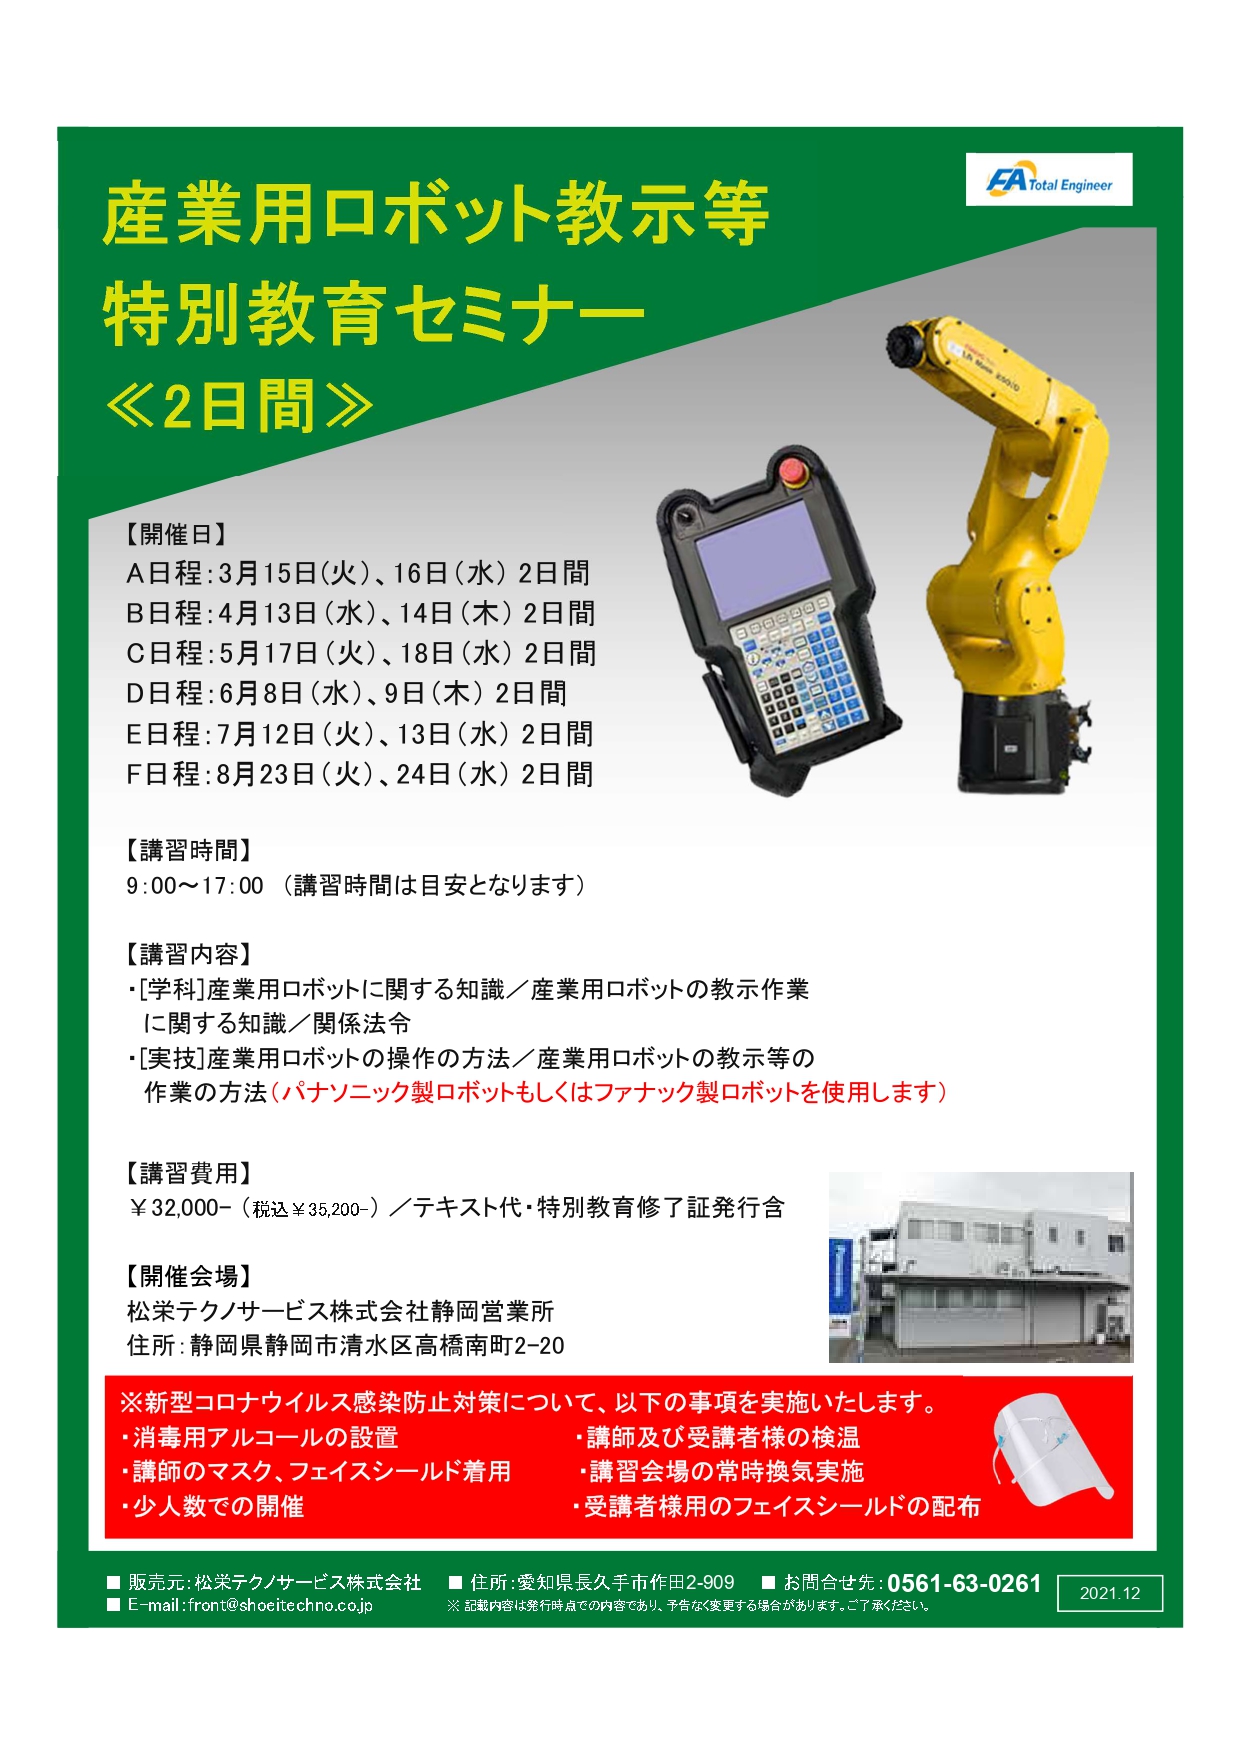 【終了しました】産業用ロボット特別教育（教示等）静岡会場開催のお知らせ【2022年3月～2022年8月】